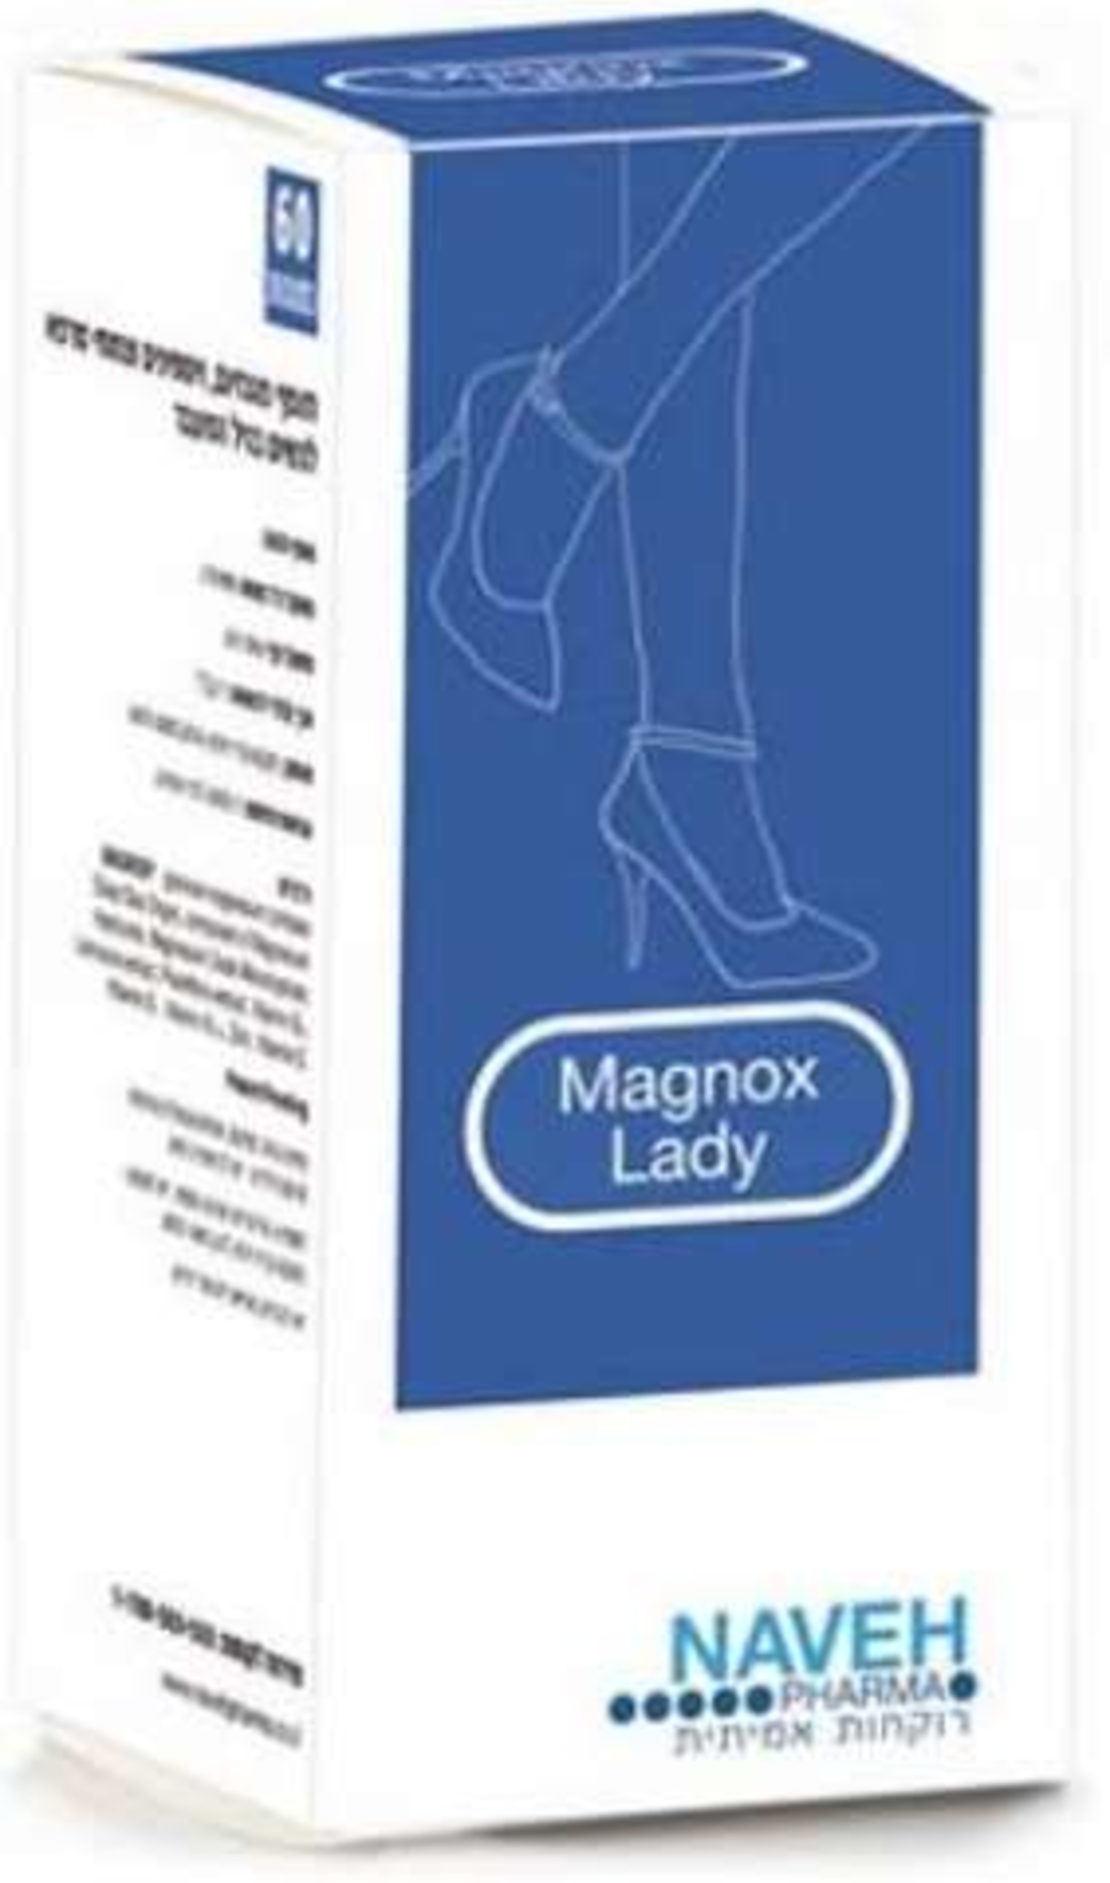 מגנוקס ליידי - מגנזיום לנשים בגיל המעבר Magnox Lady